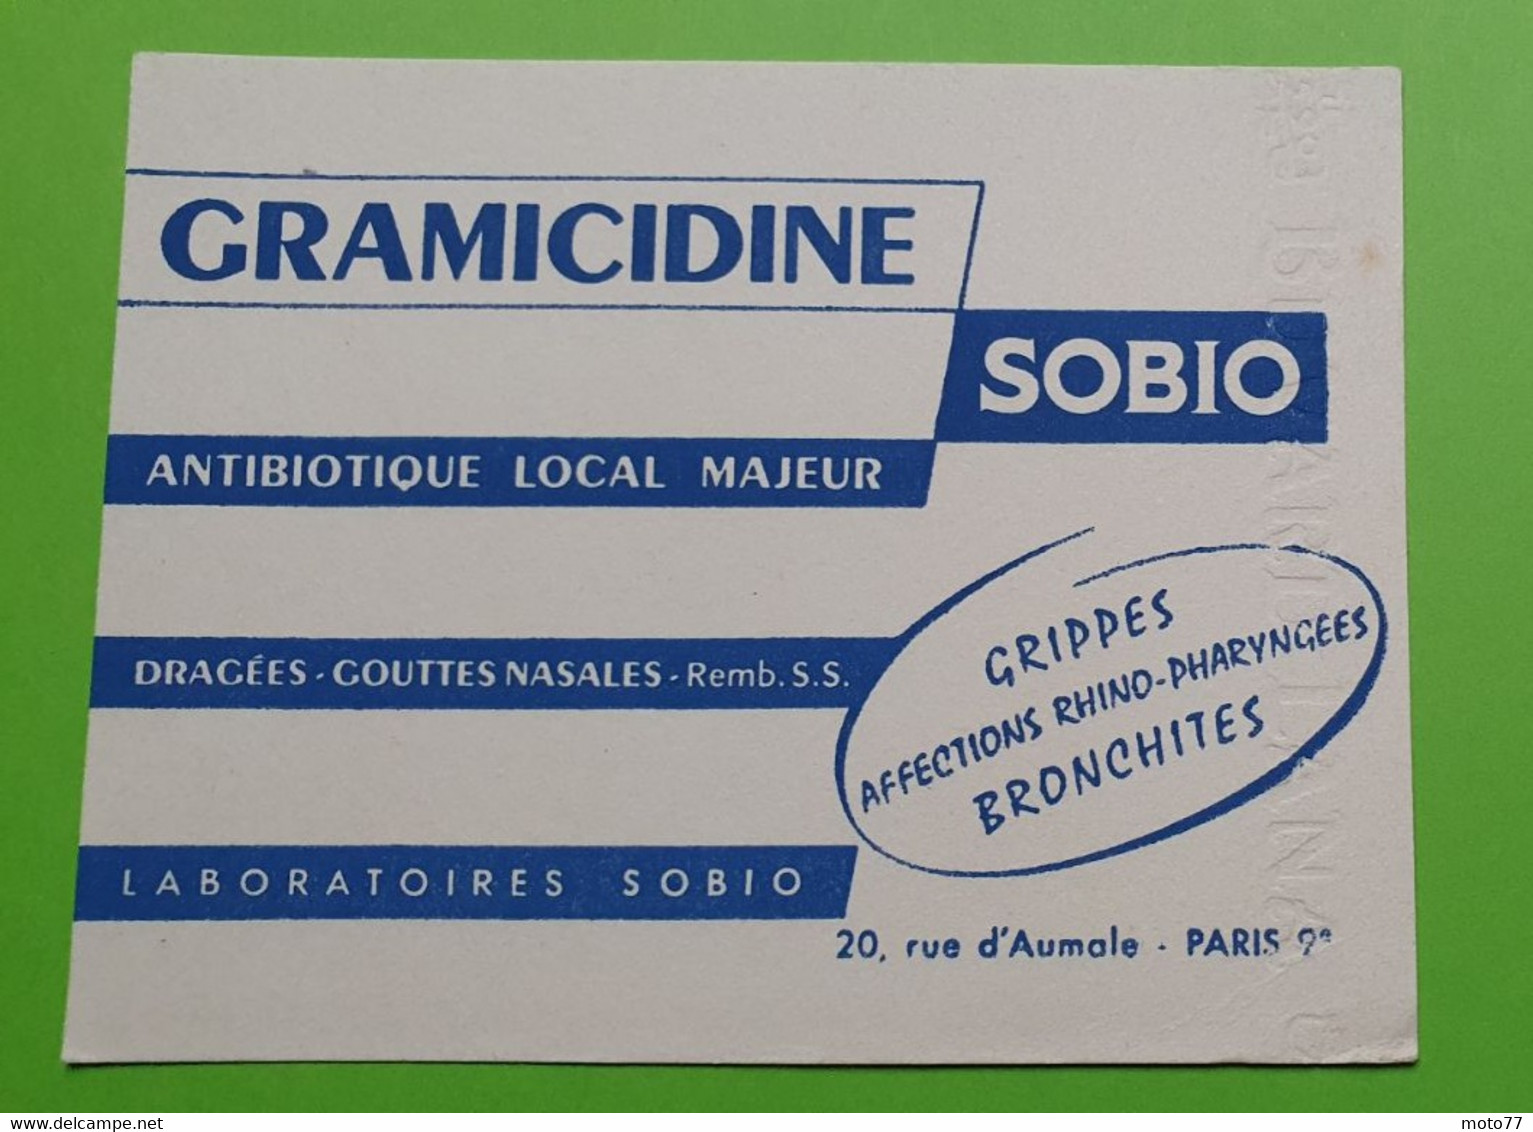 Buvard 1076 - Laboratoire SOBIO - GRAMICIDINE - Etat D'usage: Voir Photos - 13.5x10.5 Cm Environ - Années 1950 - Produits Pharmaceutiques